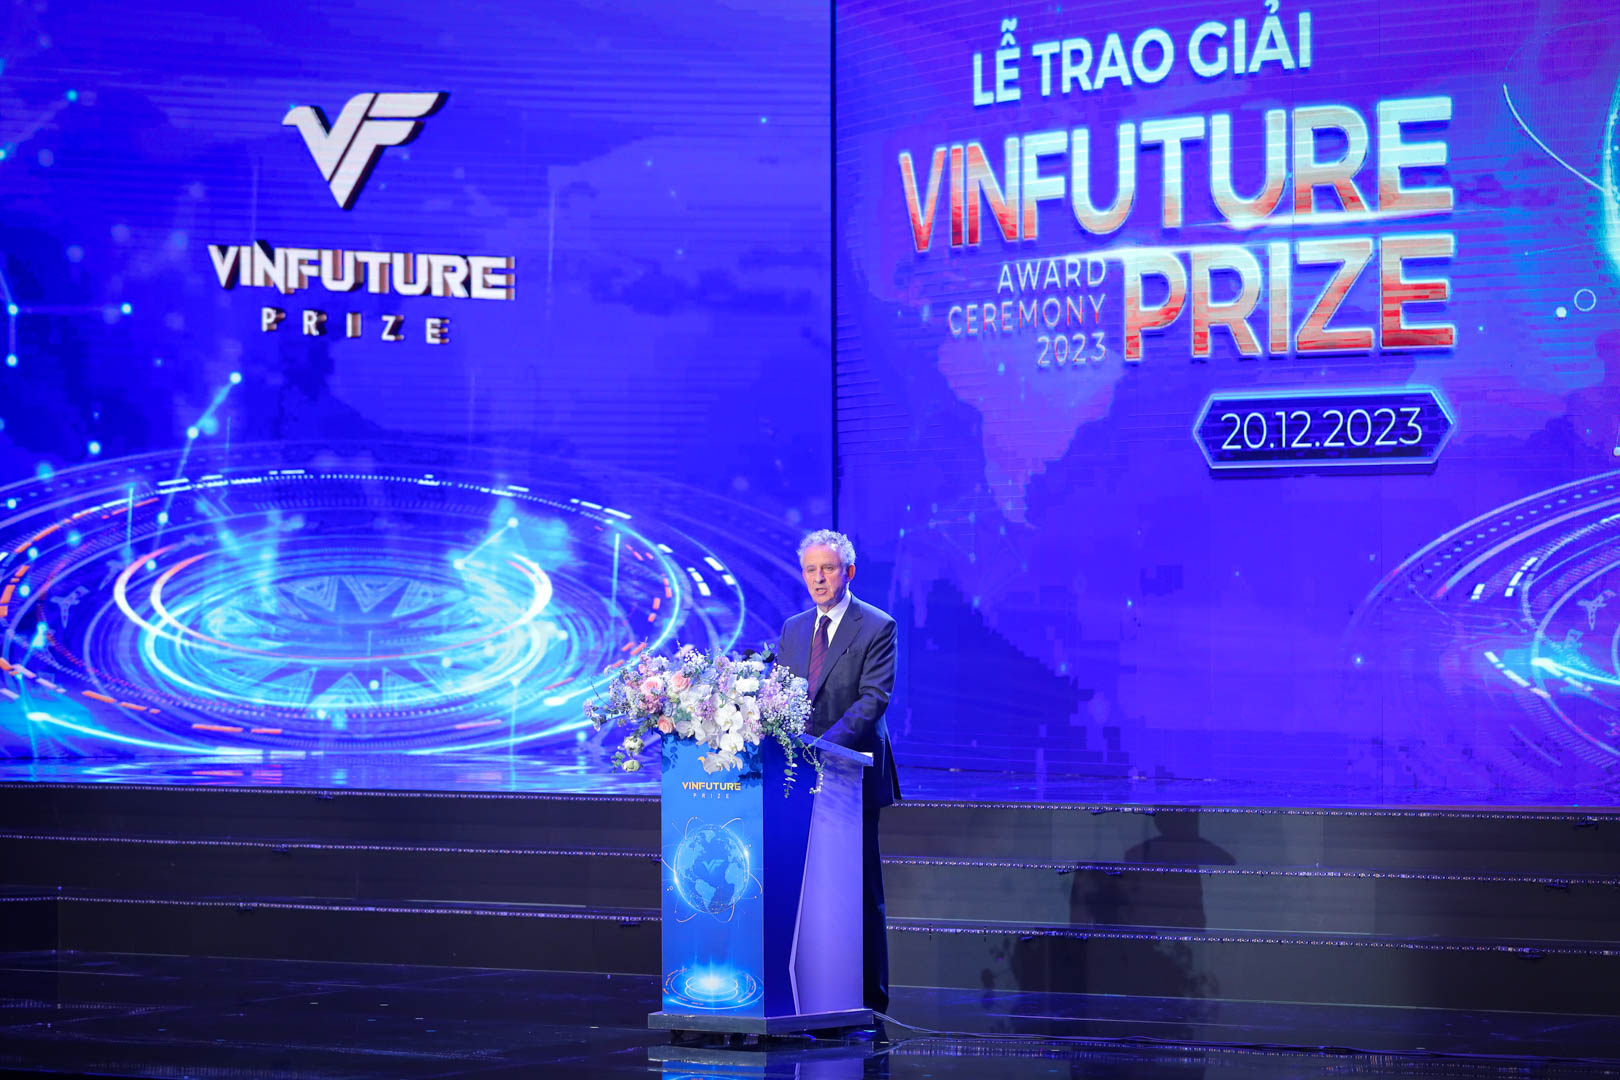 Theo GS. Friend, Chủ tịch Hội đồng Giải thưởng VinFuture, công trình cải tiến đột phá trong sản xuất năng lượng xanh bằng pin mặt trời và lưu trữ bằng pin lithium-ion đã góp phần đáng kể vào sự phát triển công bằng và bền vững trên toàn cầu. Đó là lý do đề cử xứng đáng được vinh danh cao nhất tại VinFuture năm nay.